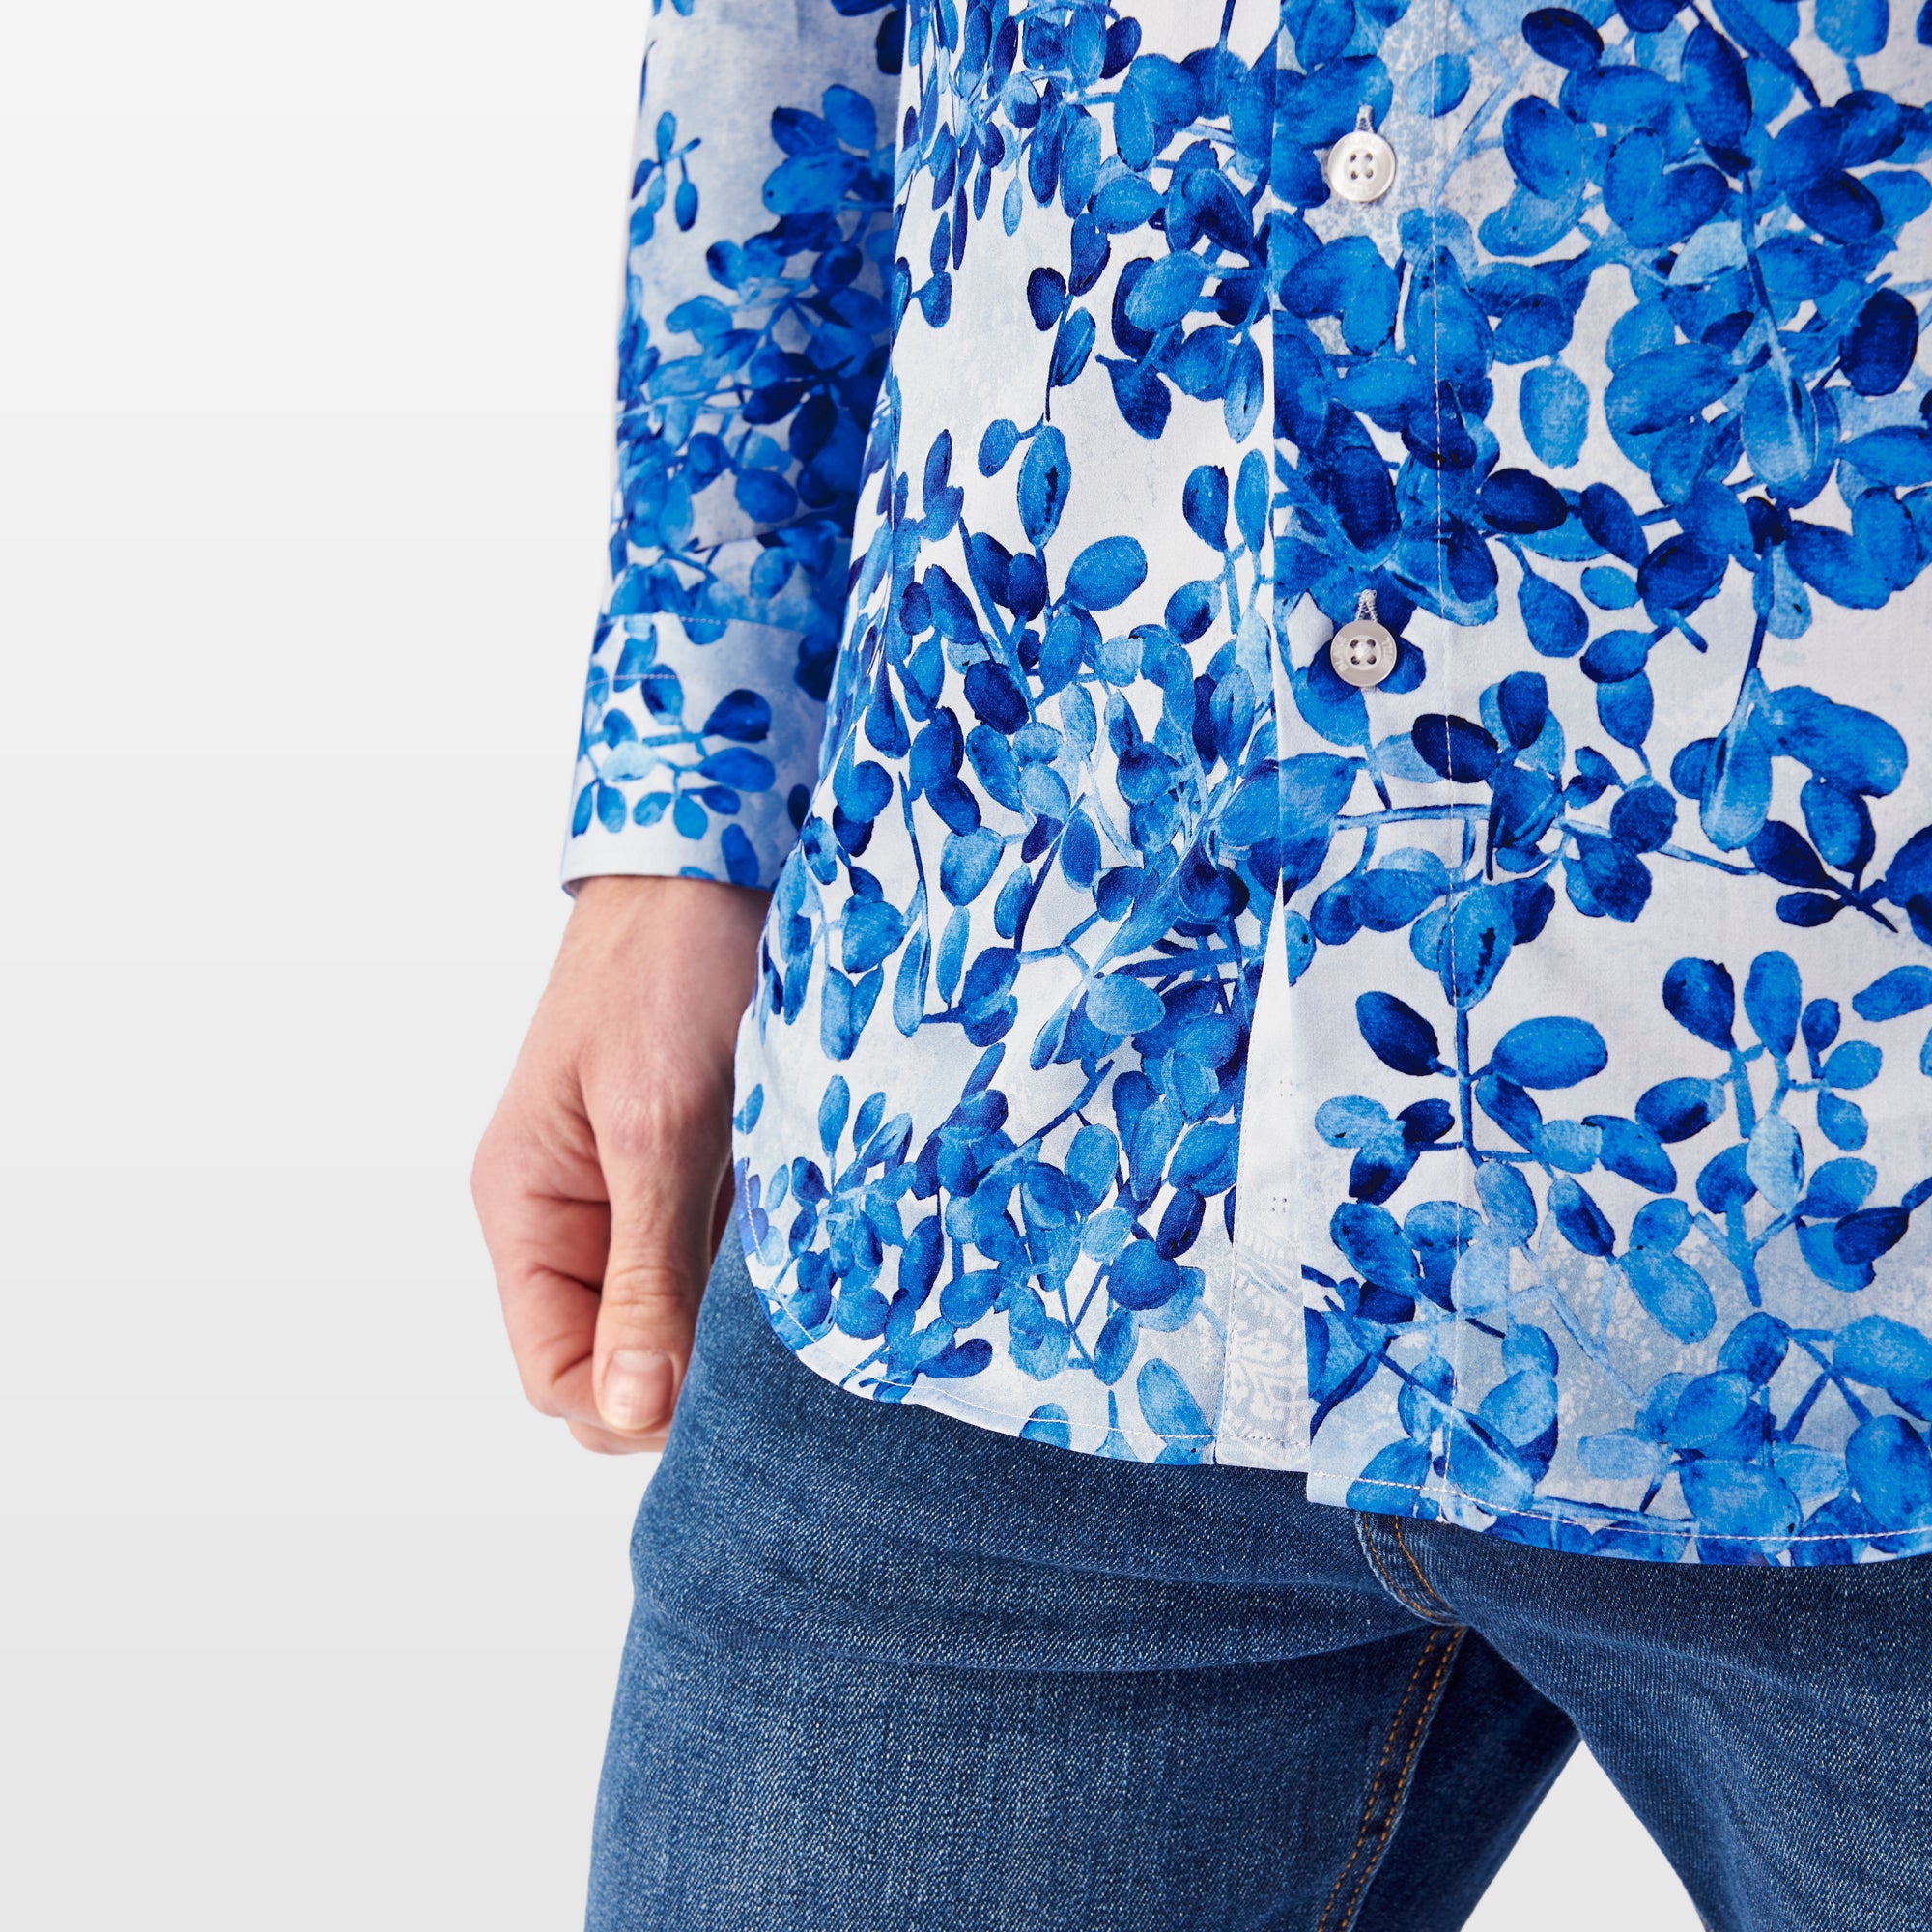 Blue Blossom Shirt